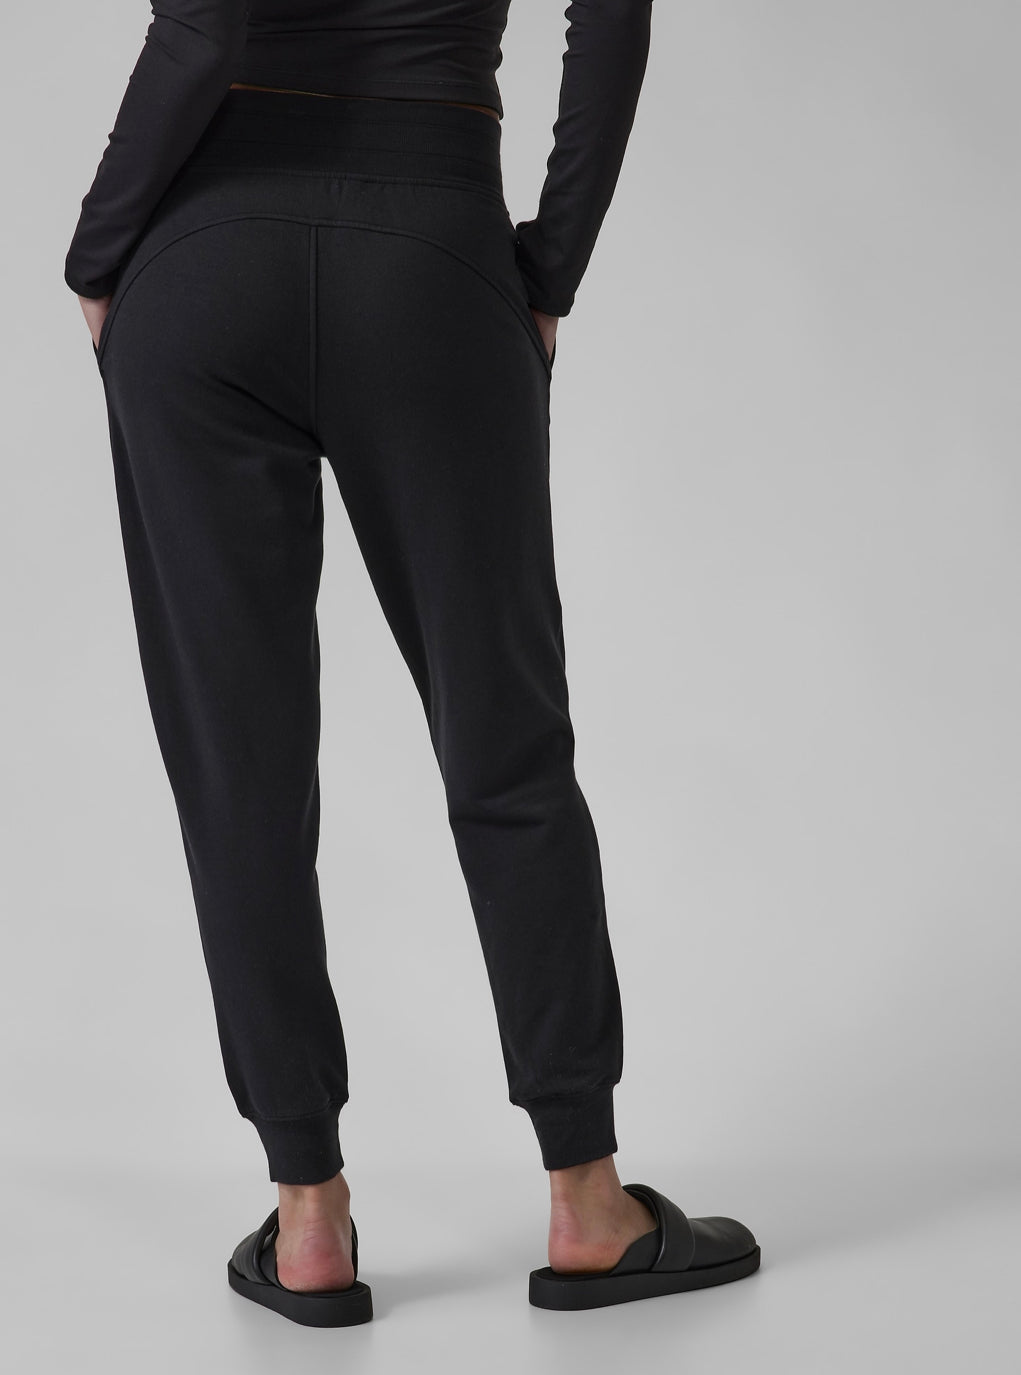 ATHLETA RADIANT JOGGER Pants Black Water Resistant Women's 10 $125.26 -  PicClick AU